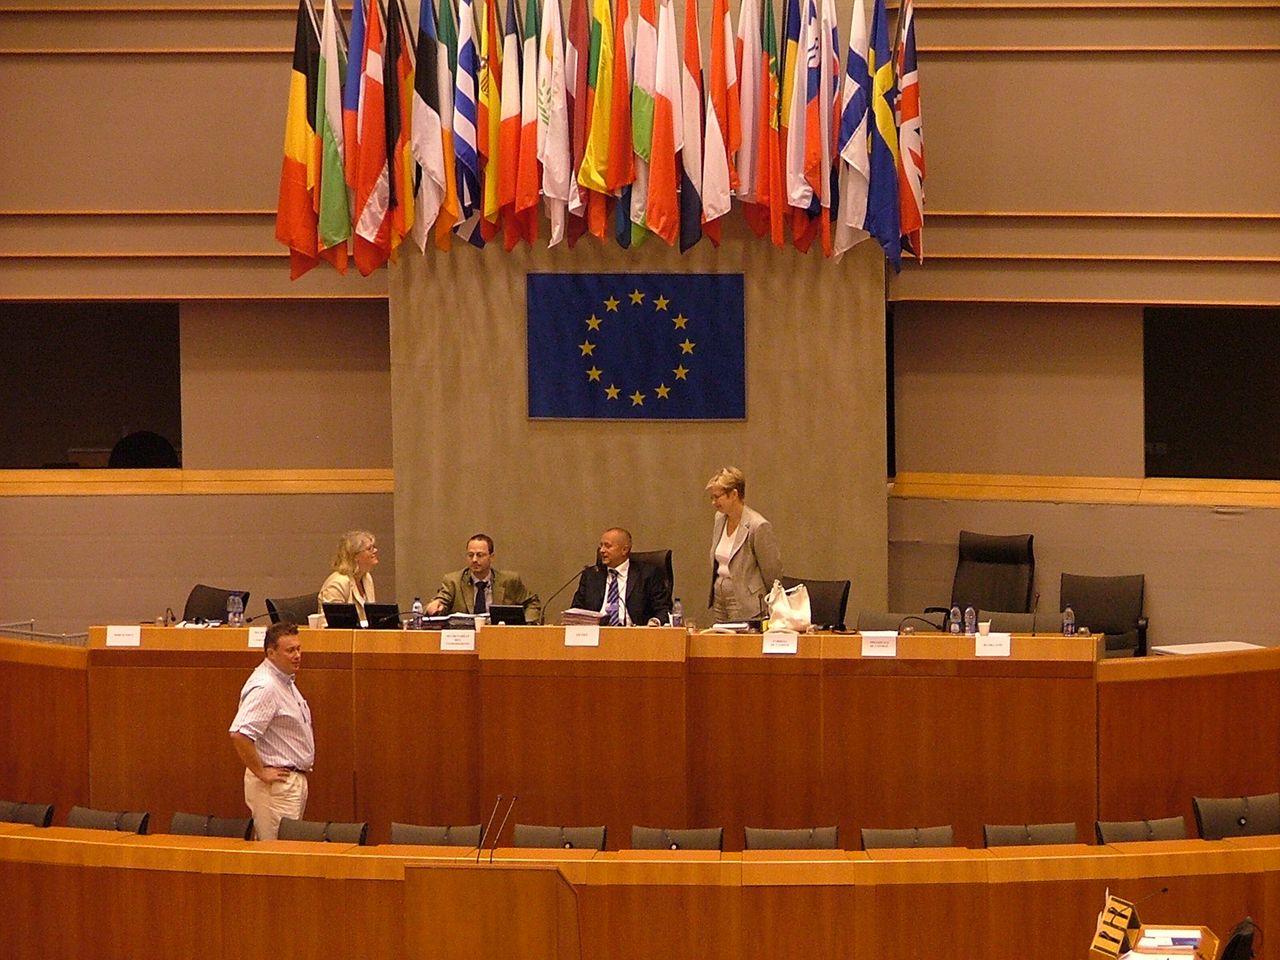 Przeszukanie w Parlamencie Europejskim. Podejrzenie rosyjskiej ingerencji